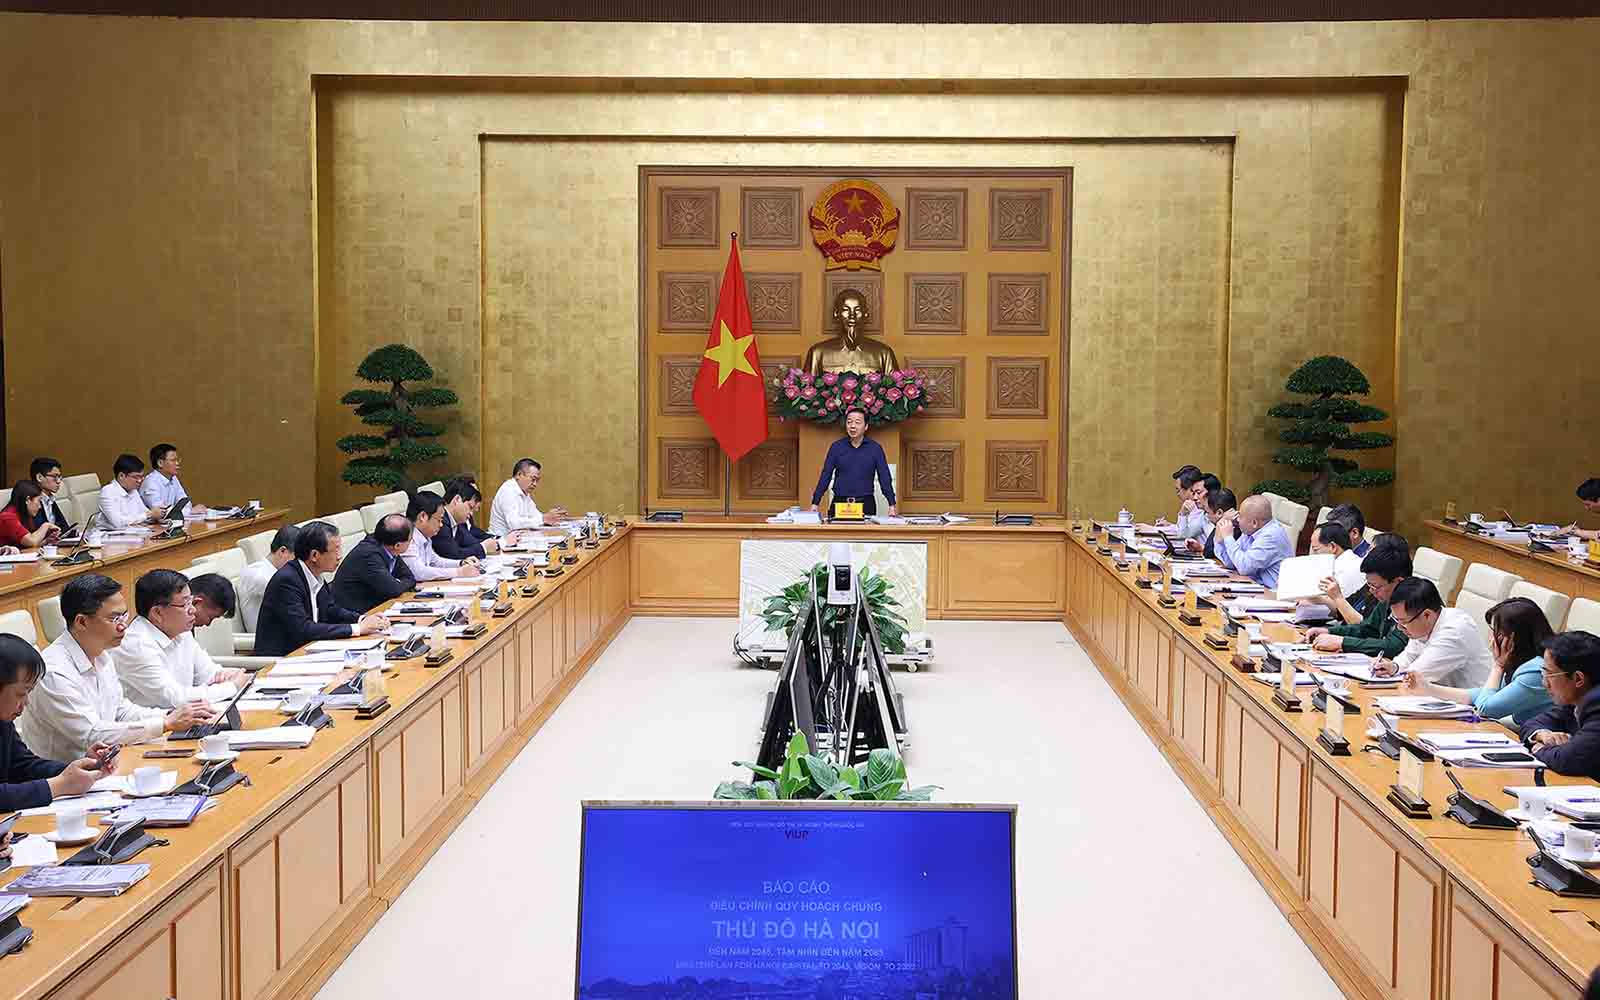 На заседании был заслушан отчет о корректировке генерального планирования столицы Ханоя. Фото: ВГП